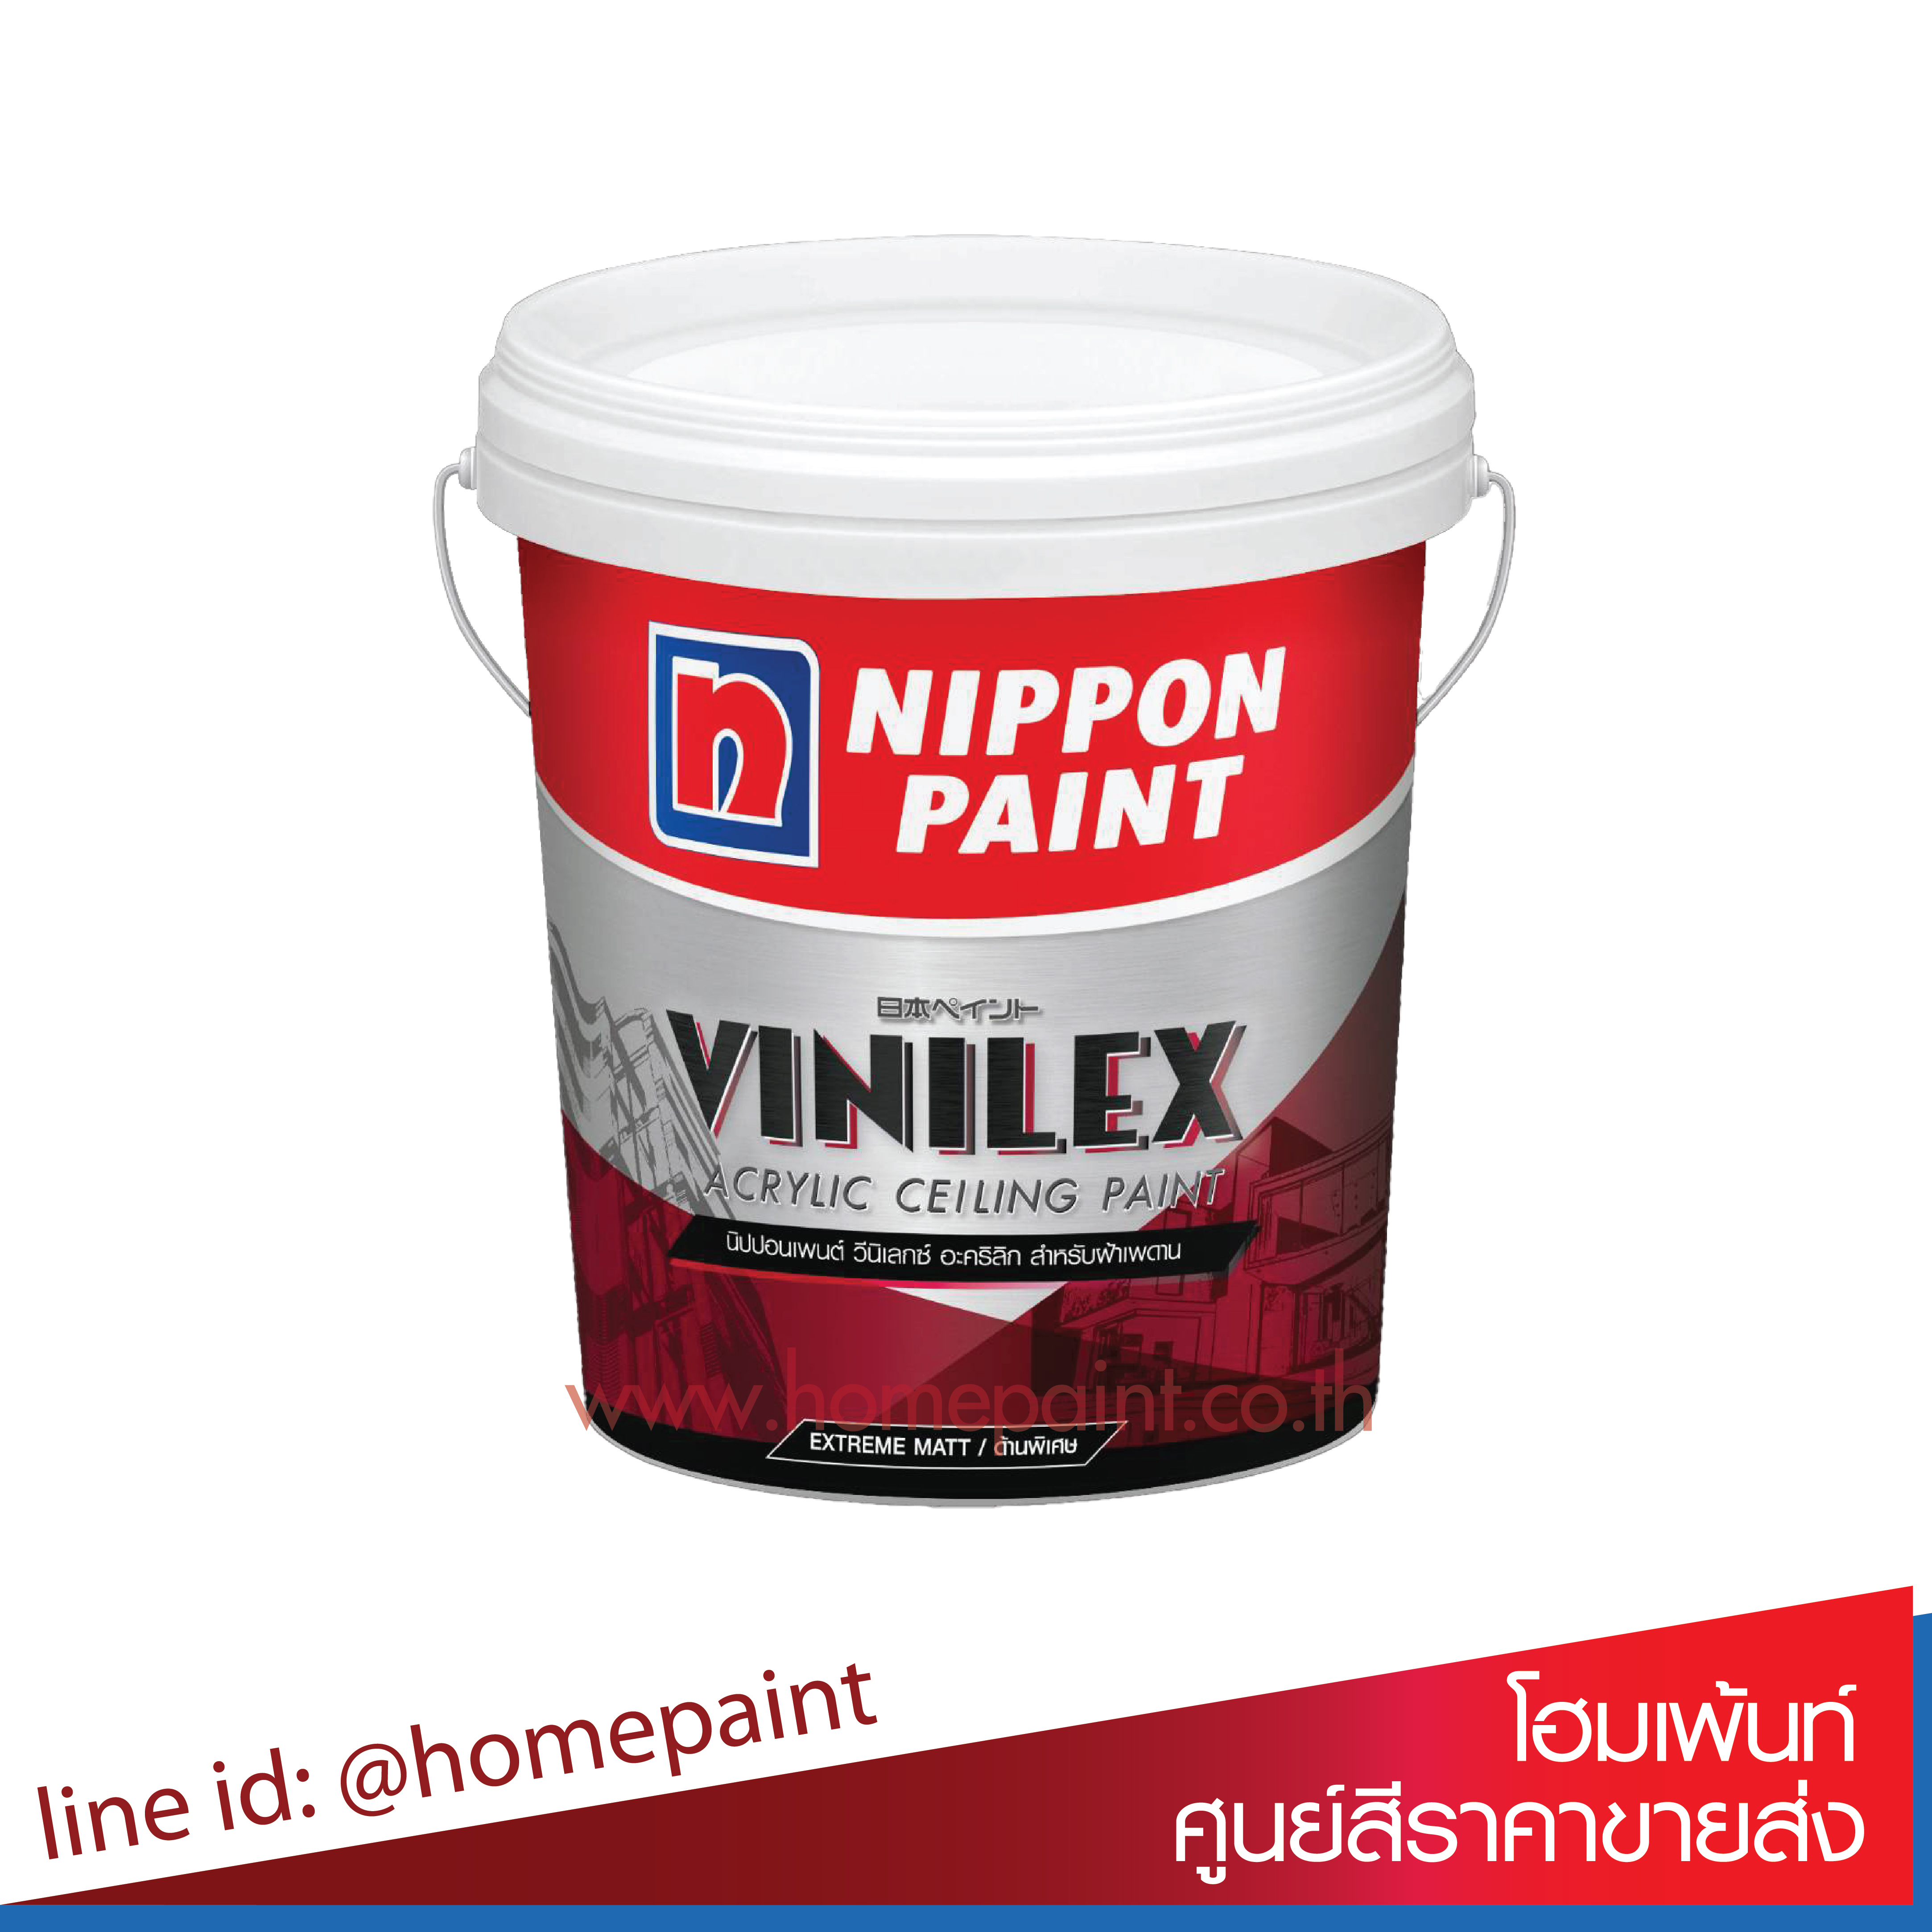 นิปปอนเพนต์ วีนิเลกซ์ อะคริลิก สำหรับฝ้าเพดาน (ด้านพิเศษ) / Nippon paint Vinilex Acrylic Ceiling Paint